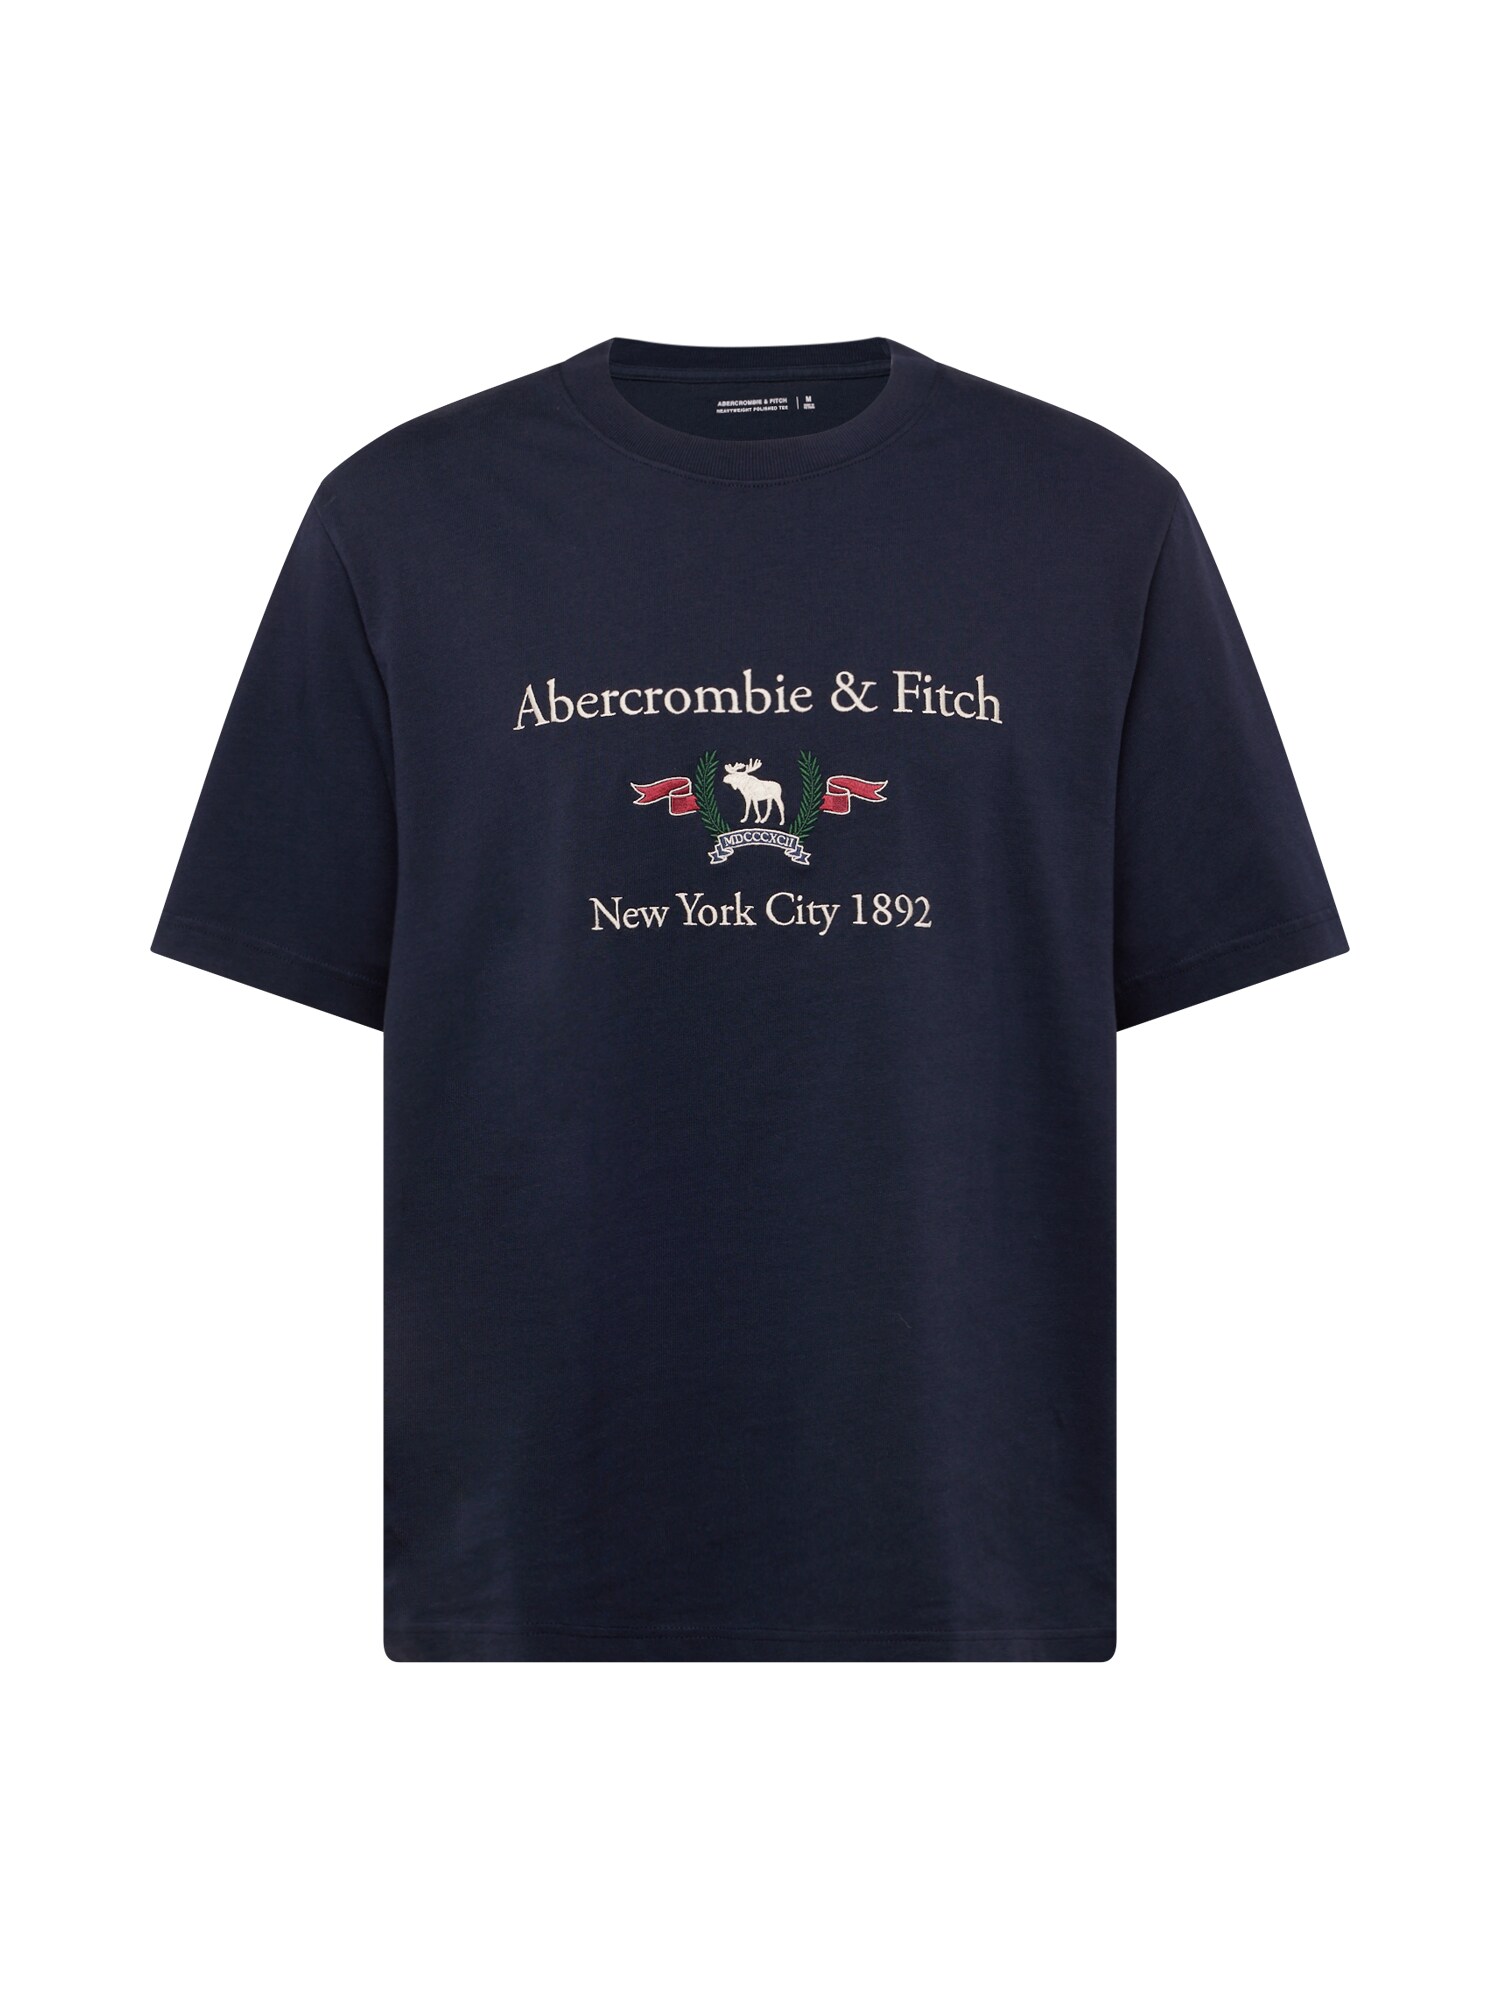 Abercrombie & Fitch Marškinėliai 'HERITAGE' tamsiai mėlyna jūros spalva / žalia / vyno raudona spalva / balta